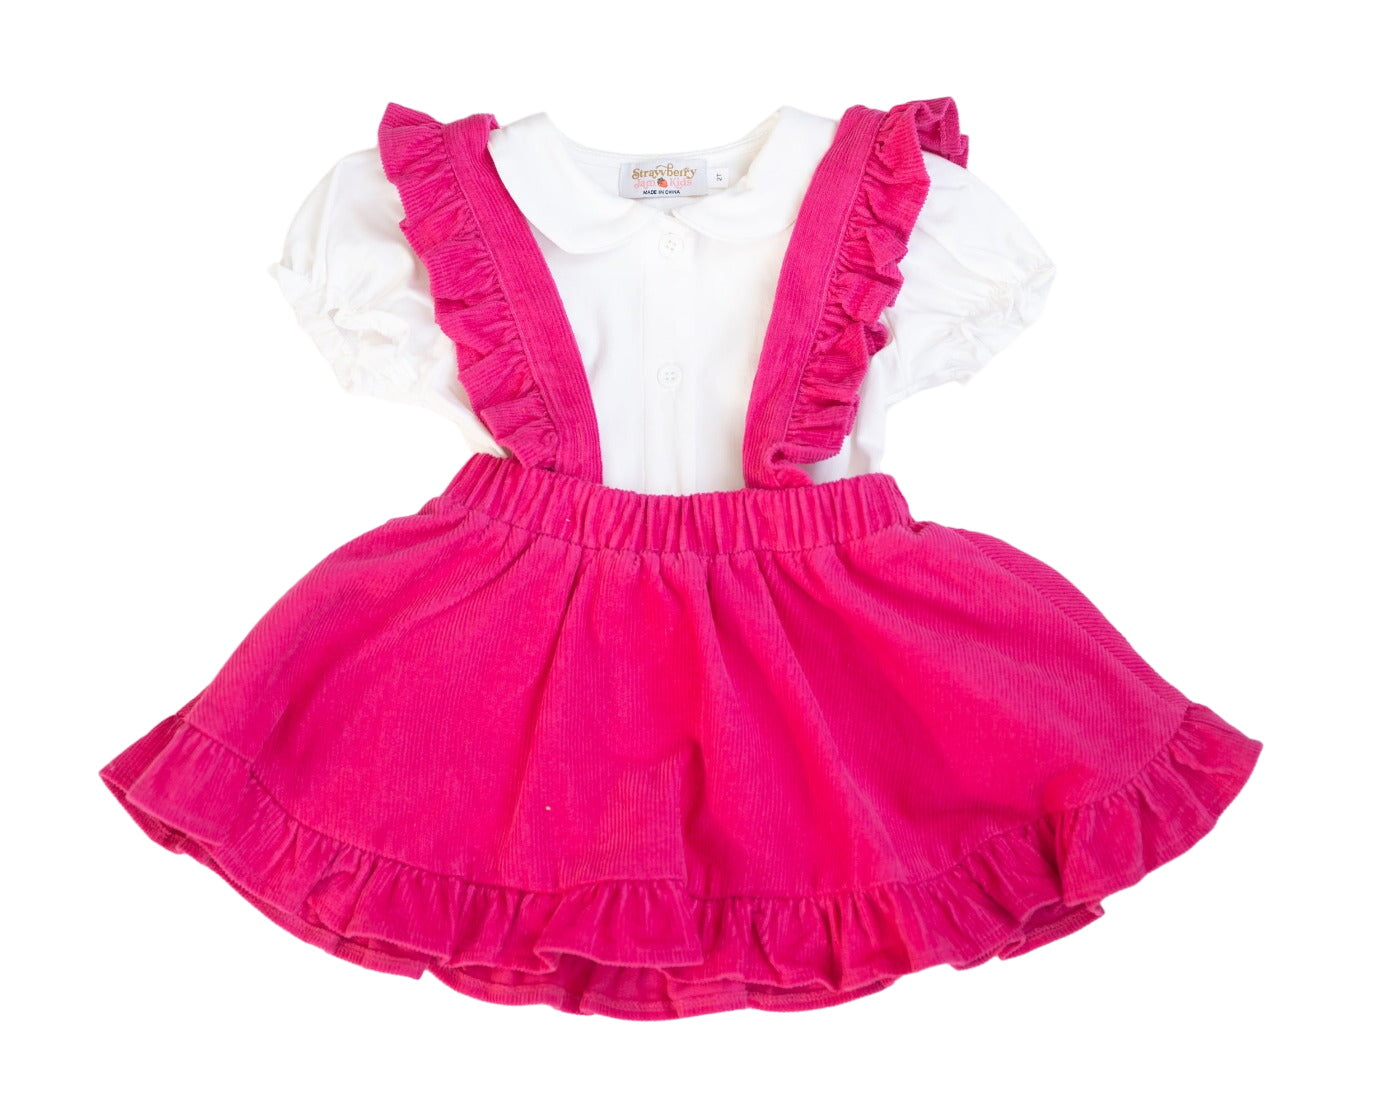 Hot Pink Corduroy Pinafore Skirt Baby Toddler Girls